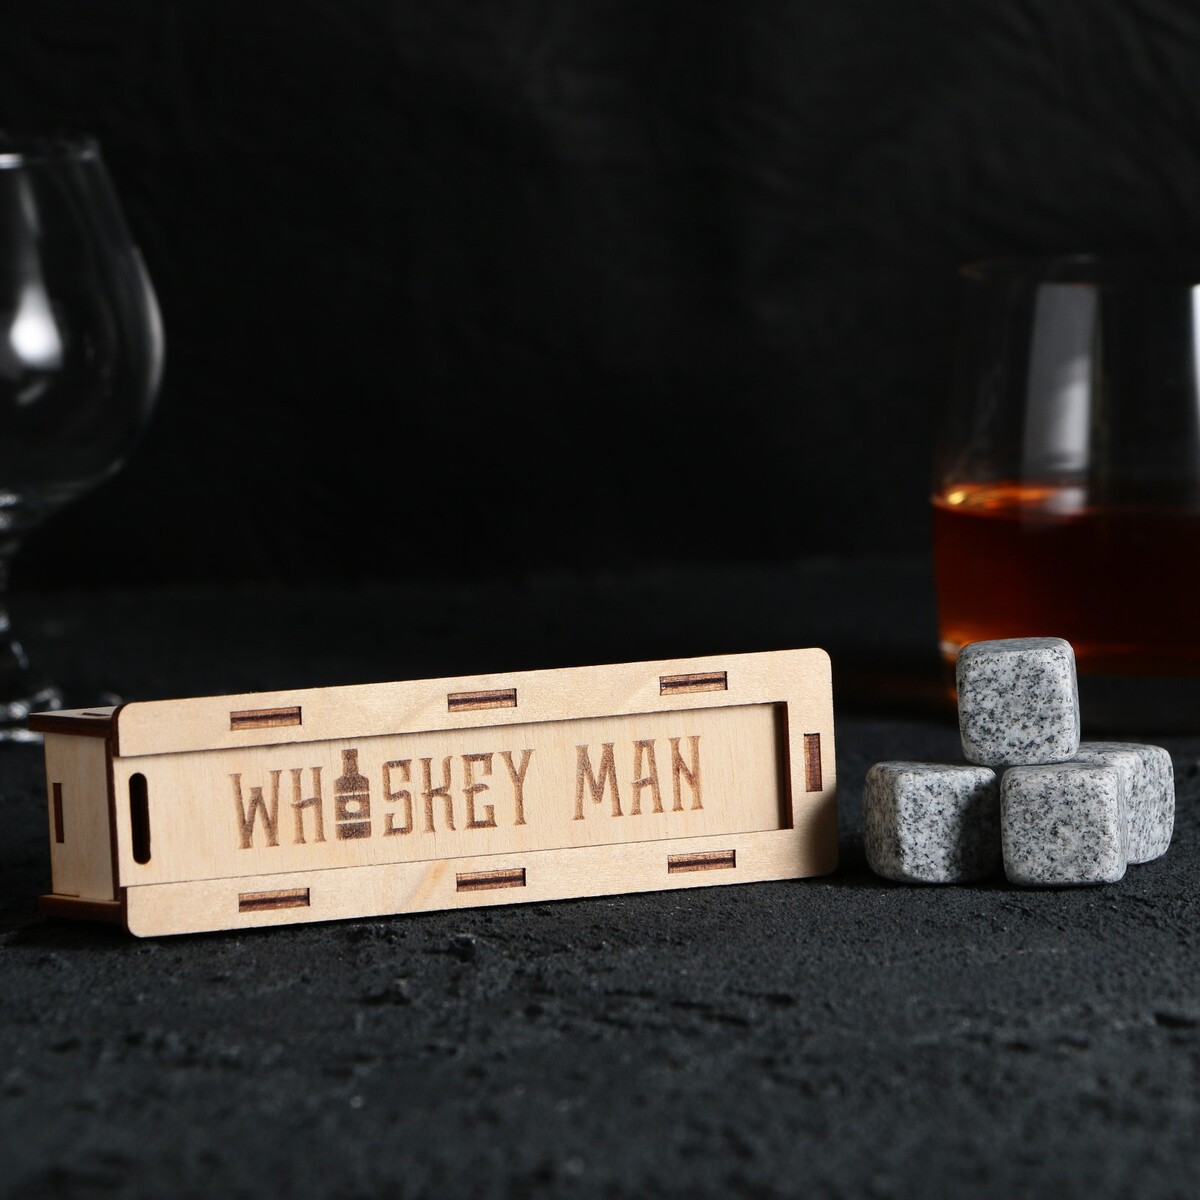         whiskey man, 4 